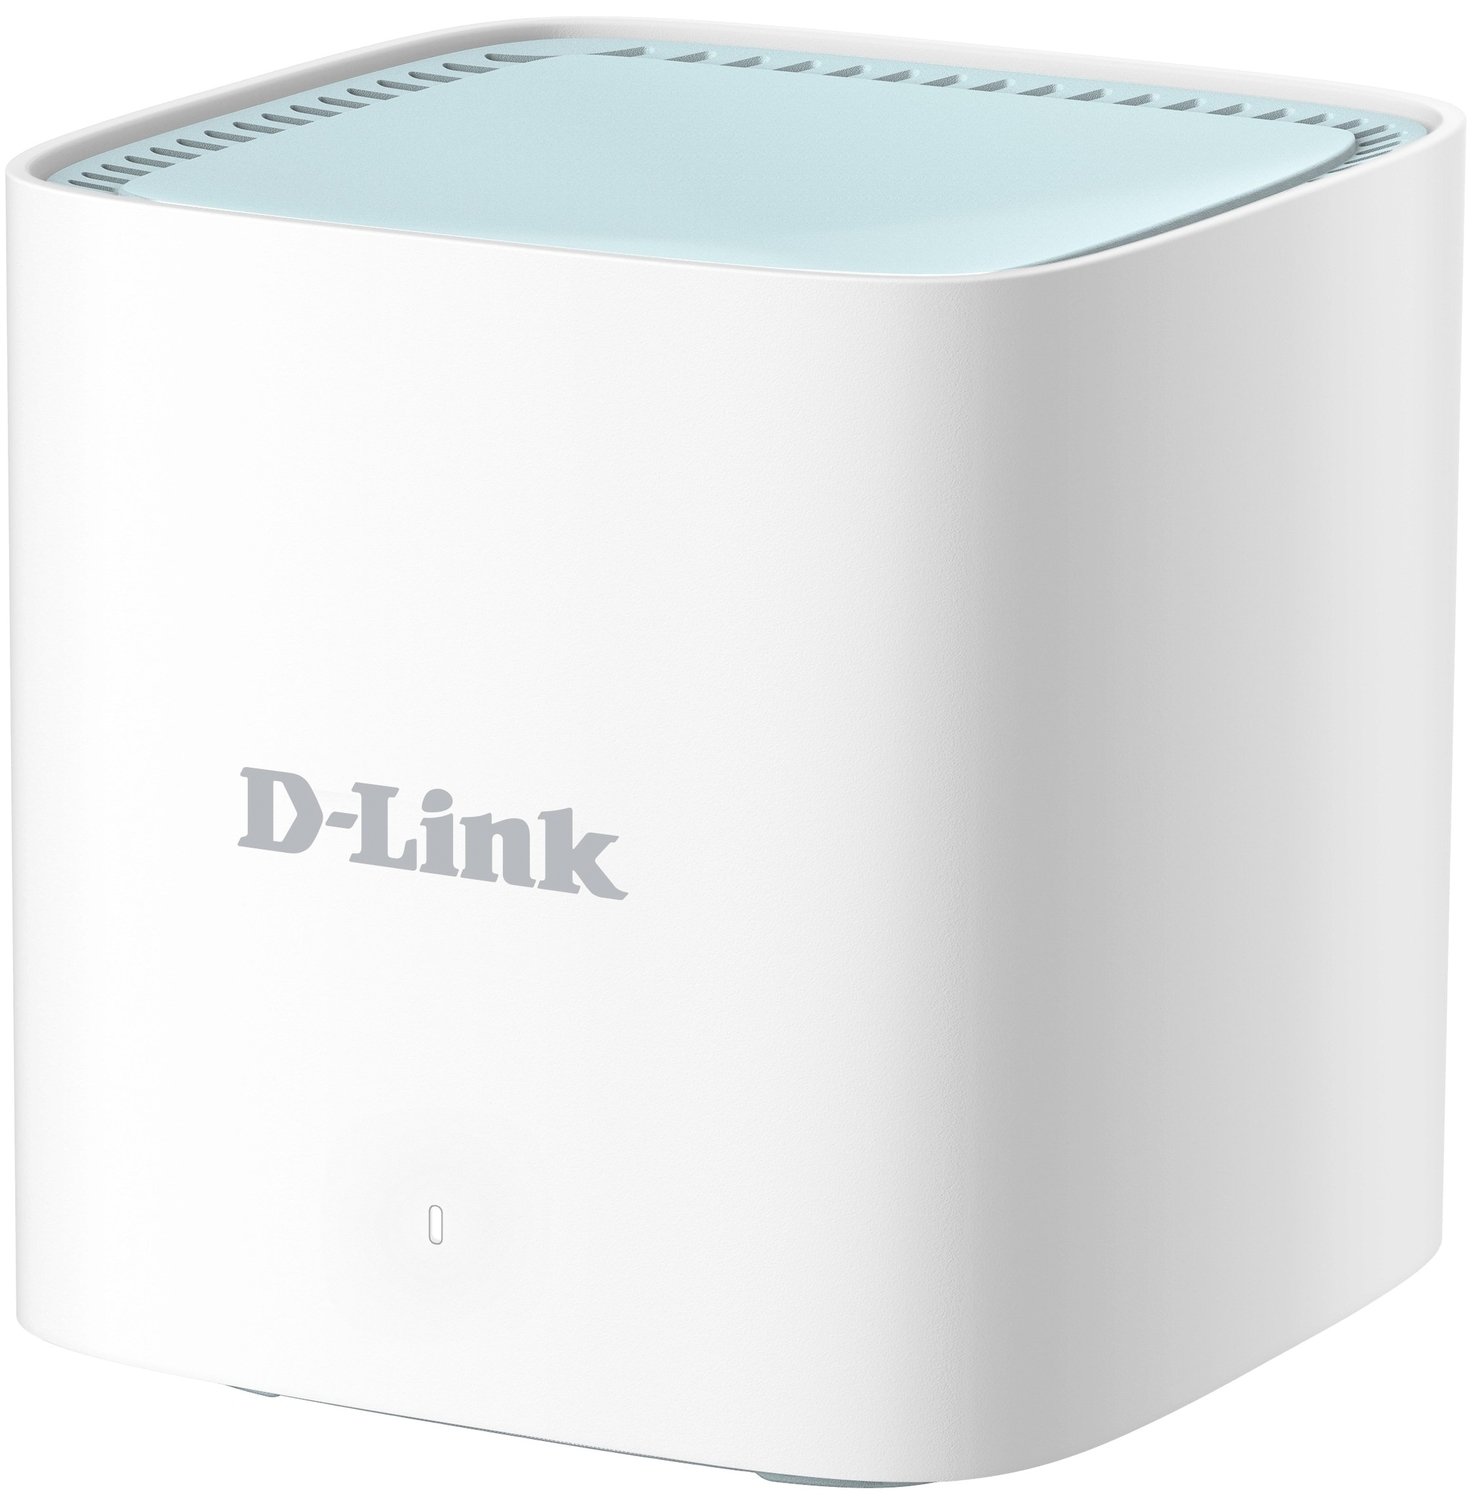 Новинки от Dlink — D-link DIR-636L, D-link DIR-826L и D-link DWL-2600AP/A1A/PC